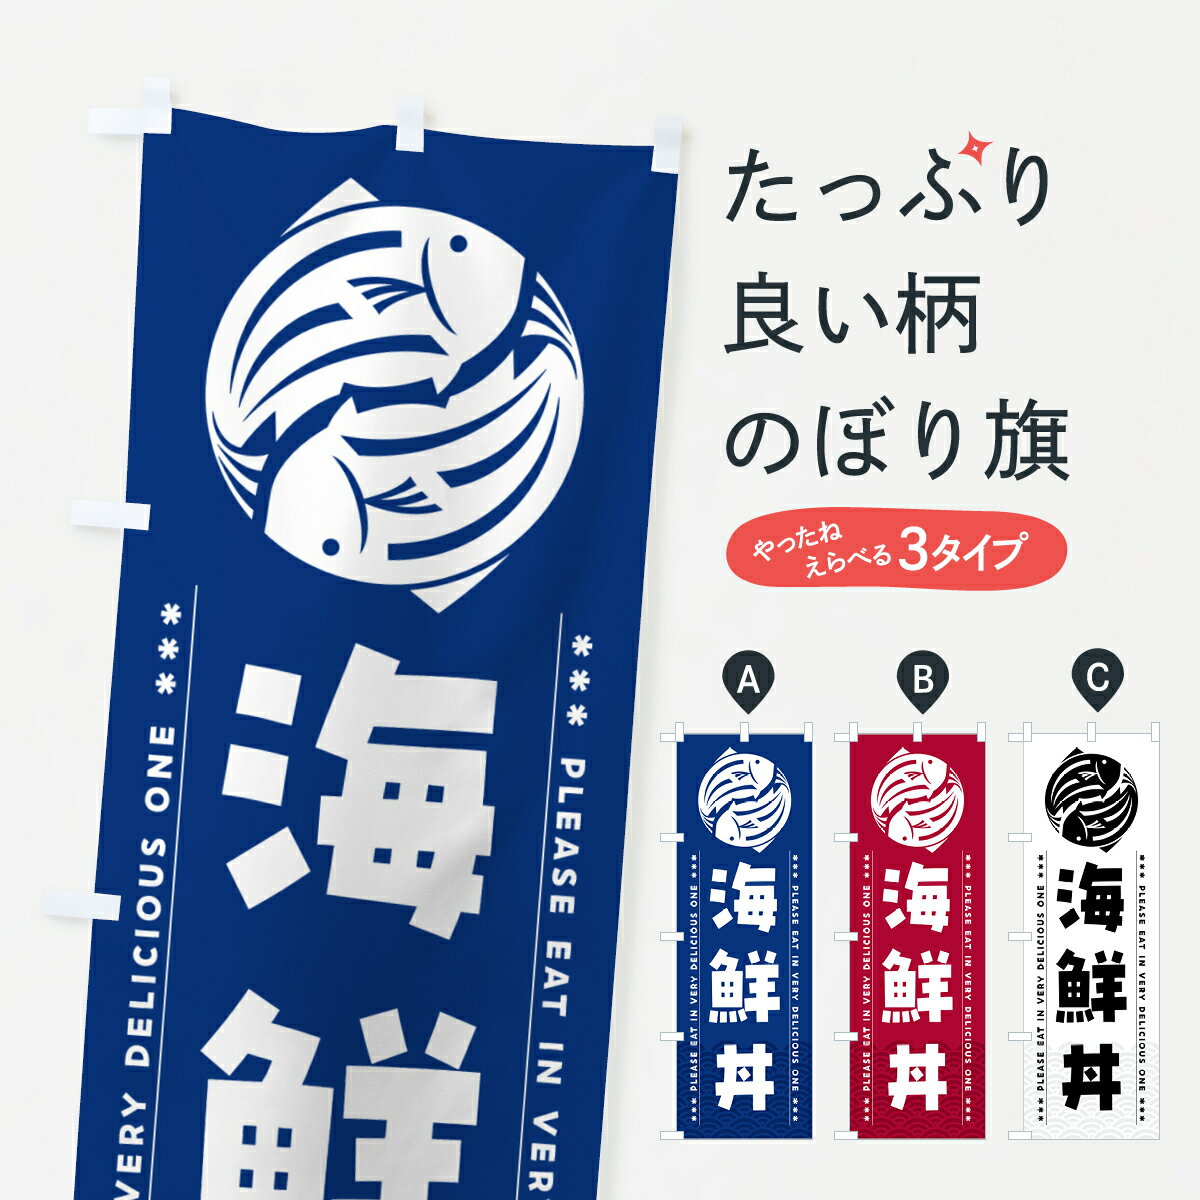 【ポスト便 送料360】 のぼり旗 海鮮丼のぼり 5G7N 